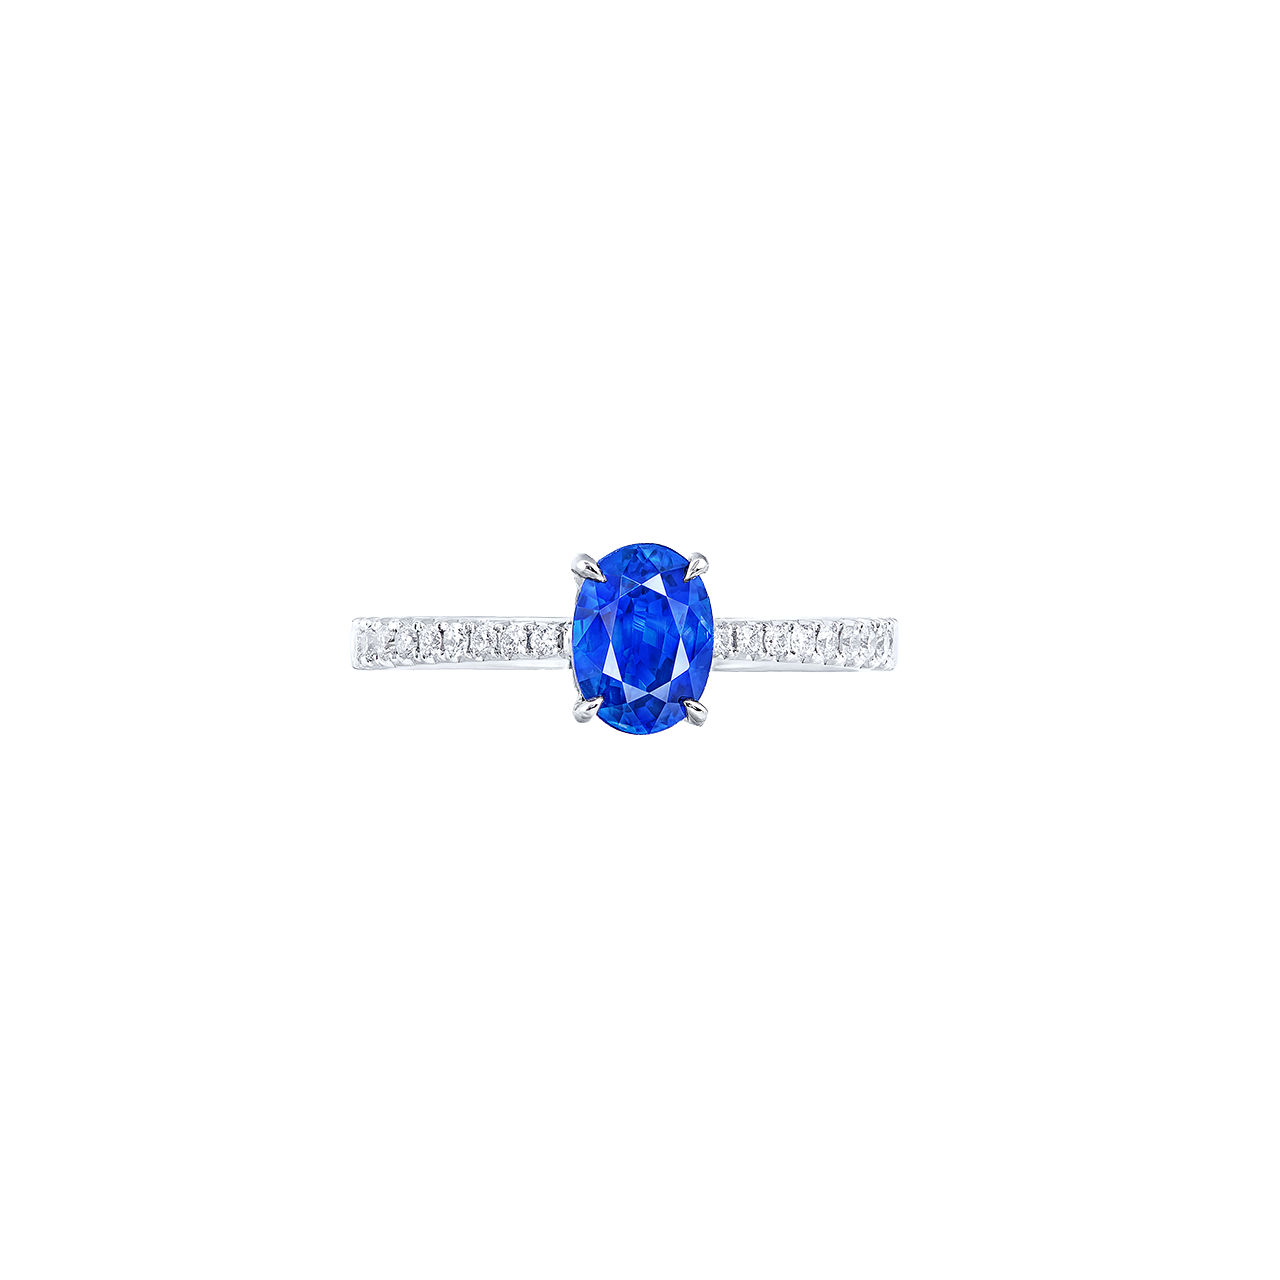 1.18克拉 天然藍寶石鑽戒
Blue Sapphire and Diamond Ring